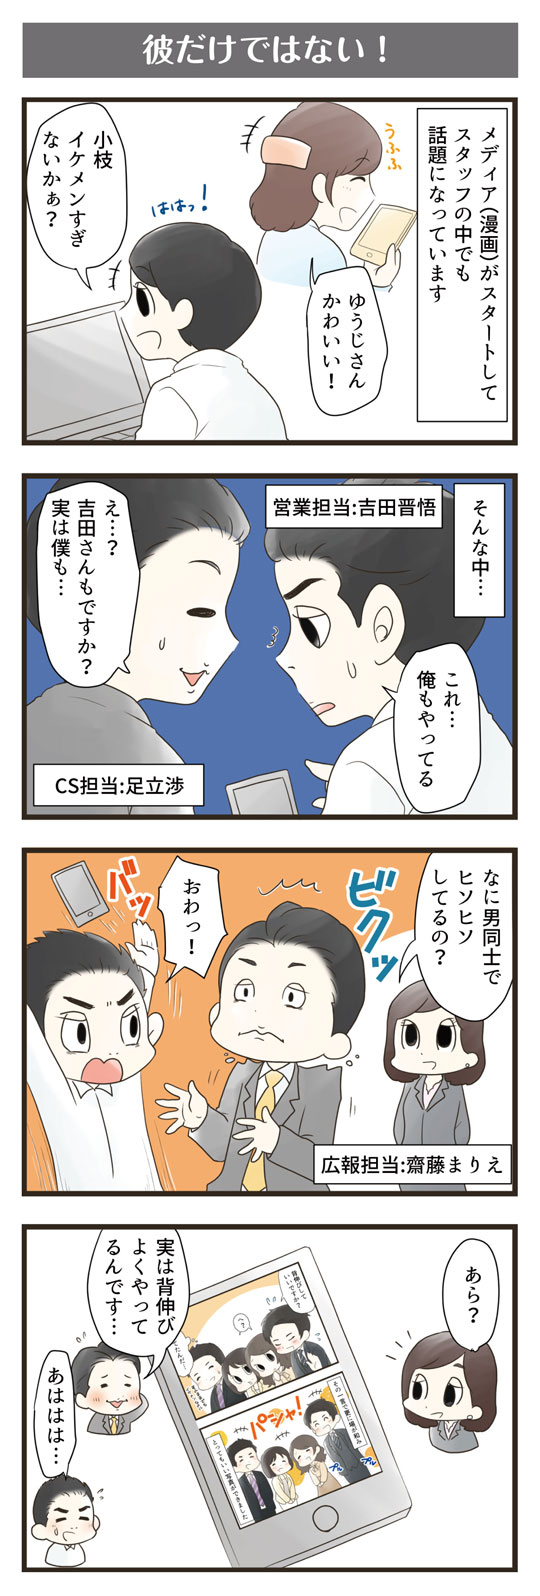 横浜スタイル4コマ漫画7月分